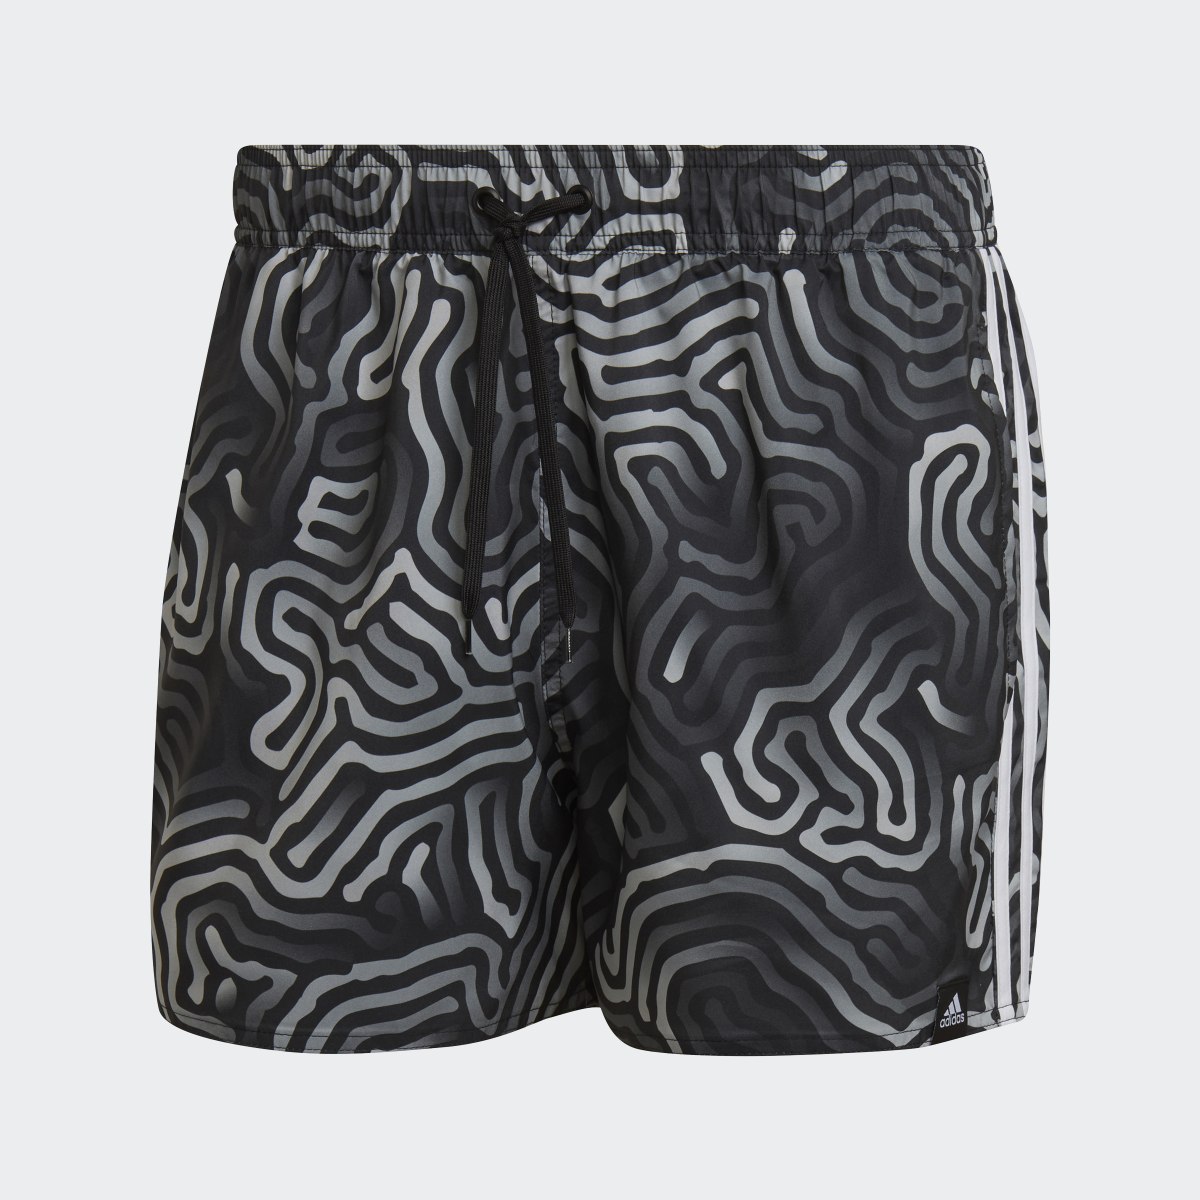 Adidas Very Short Length Color Maze CLX Swim Shorts. 4